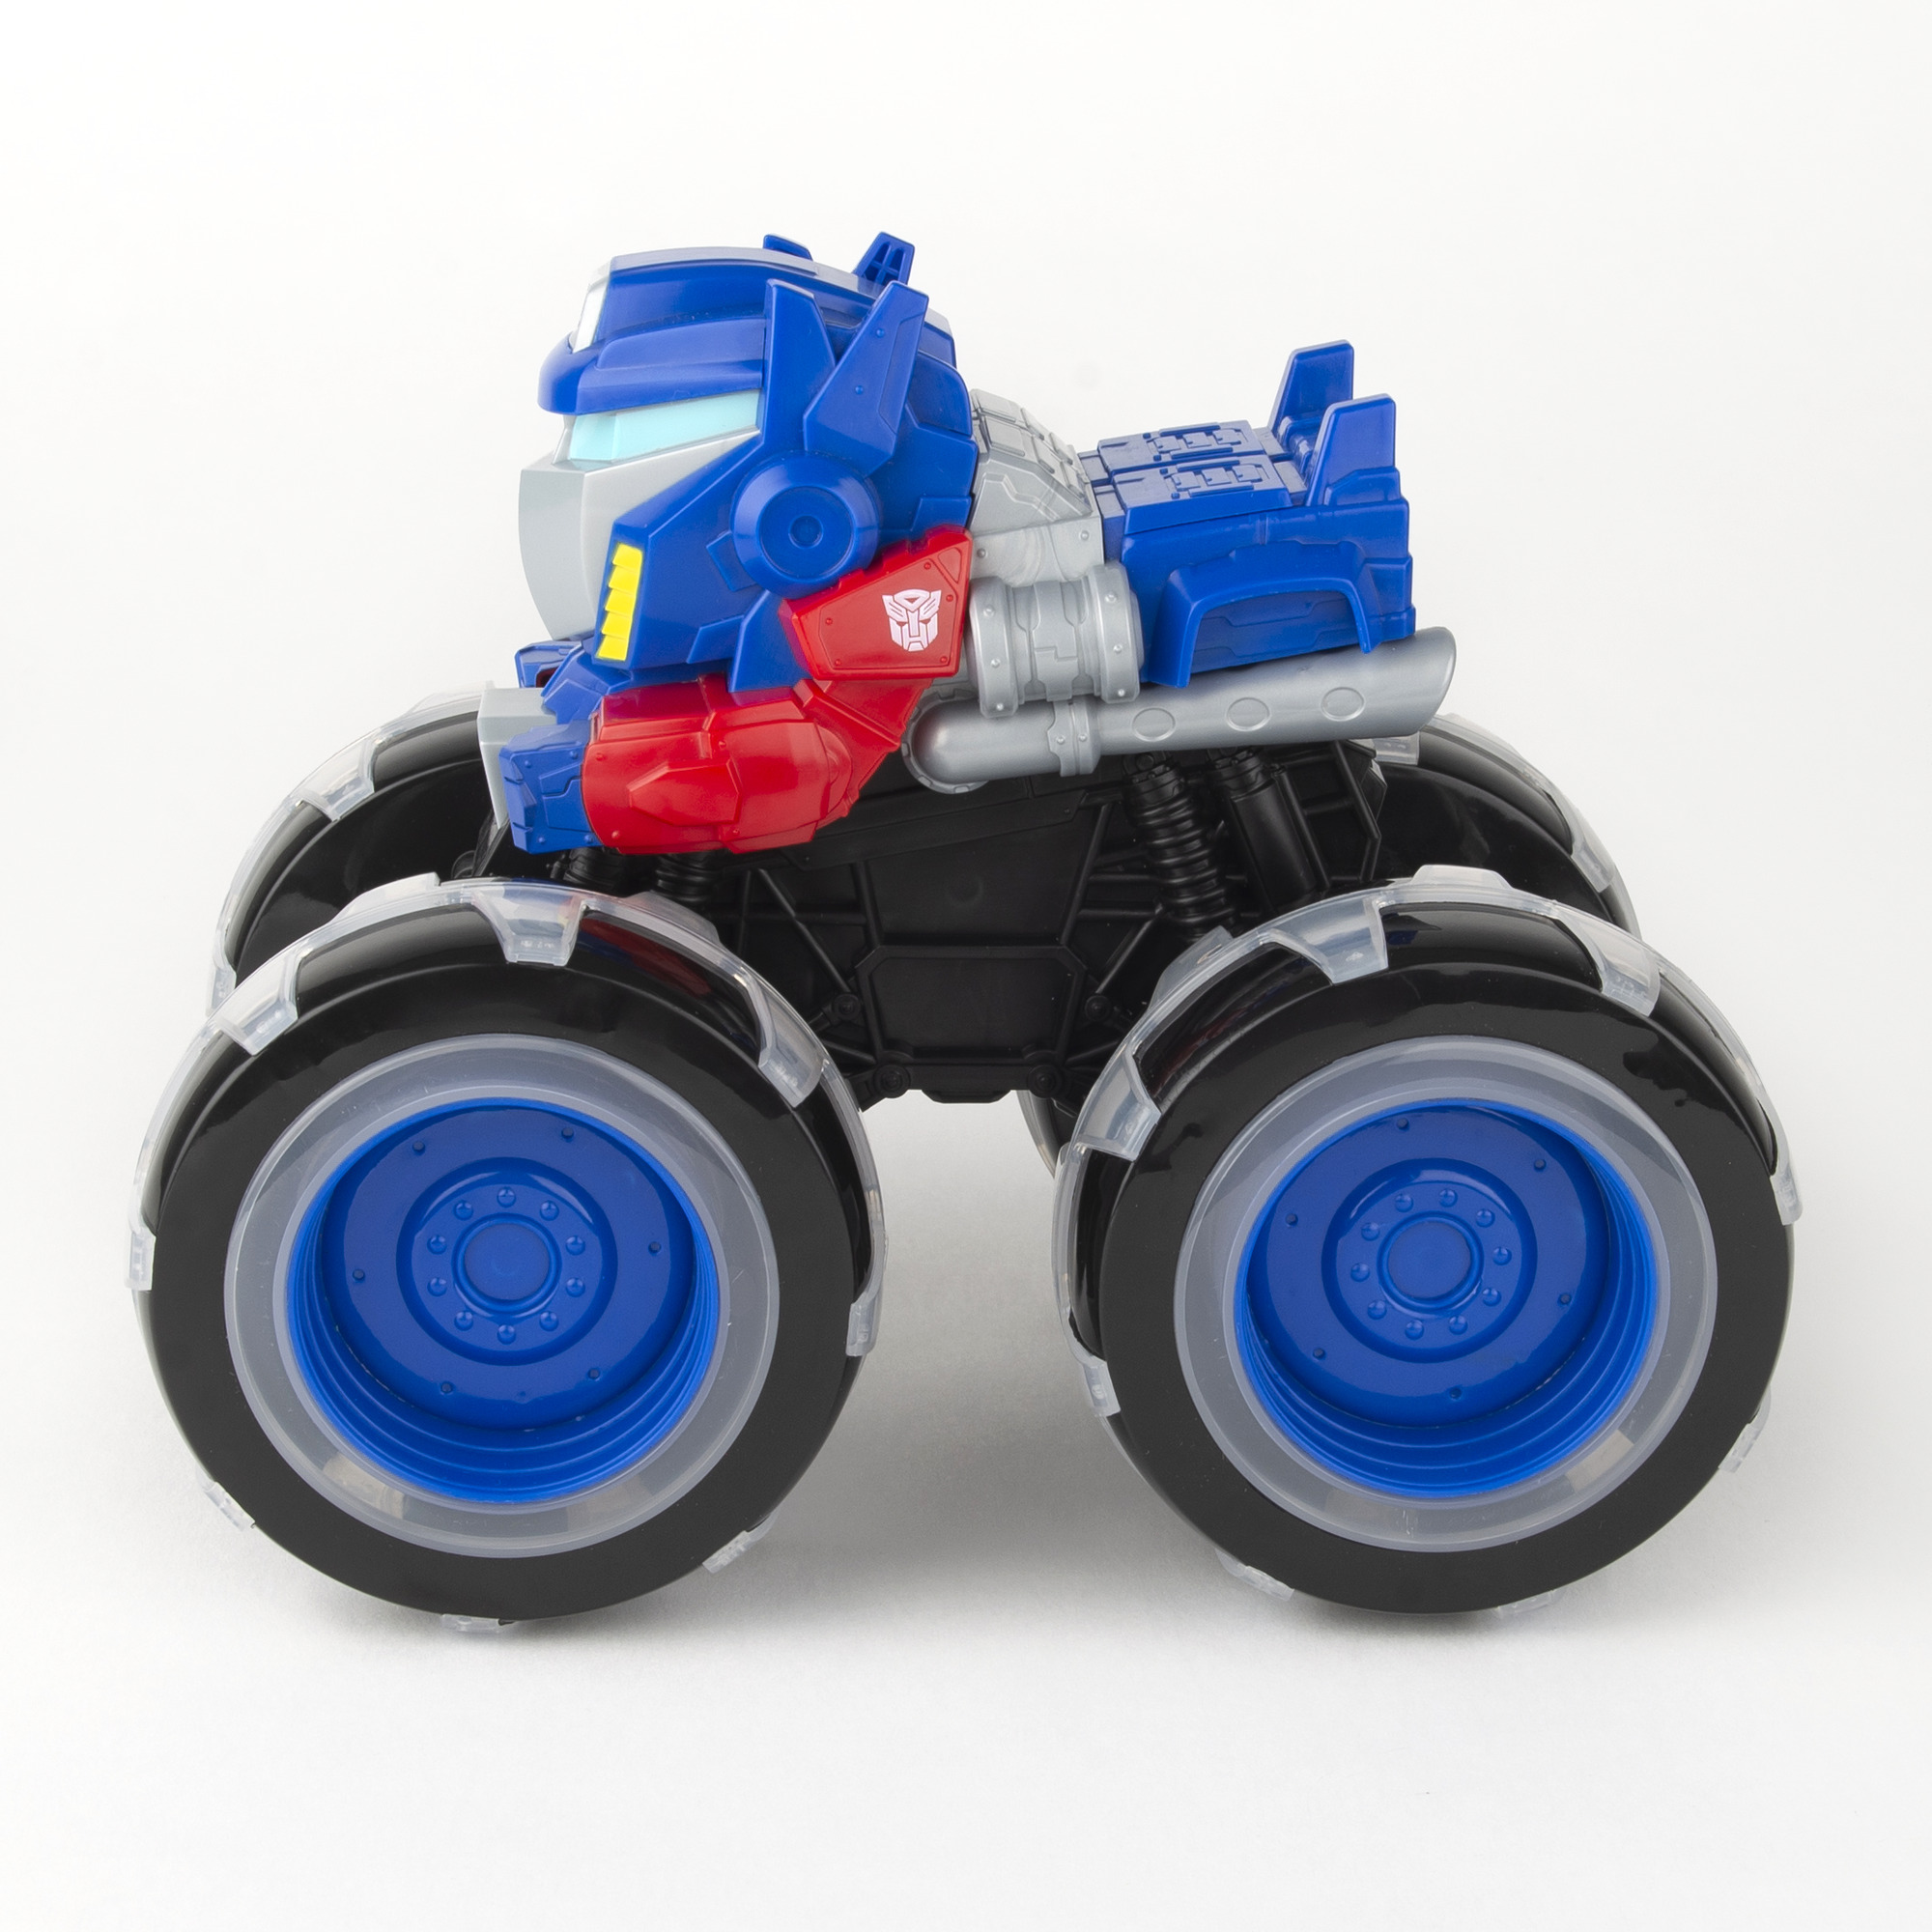 Іграшкова машинка John Deere Kids Monster Treads Оптимус Прайм з великими колесами що світяться (474